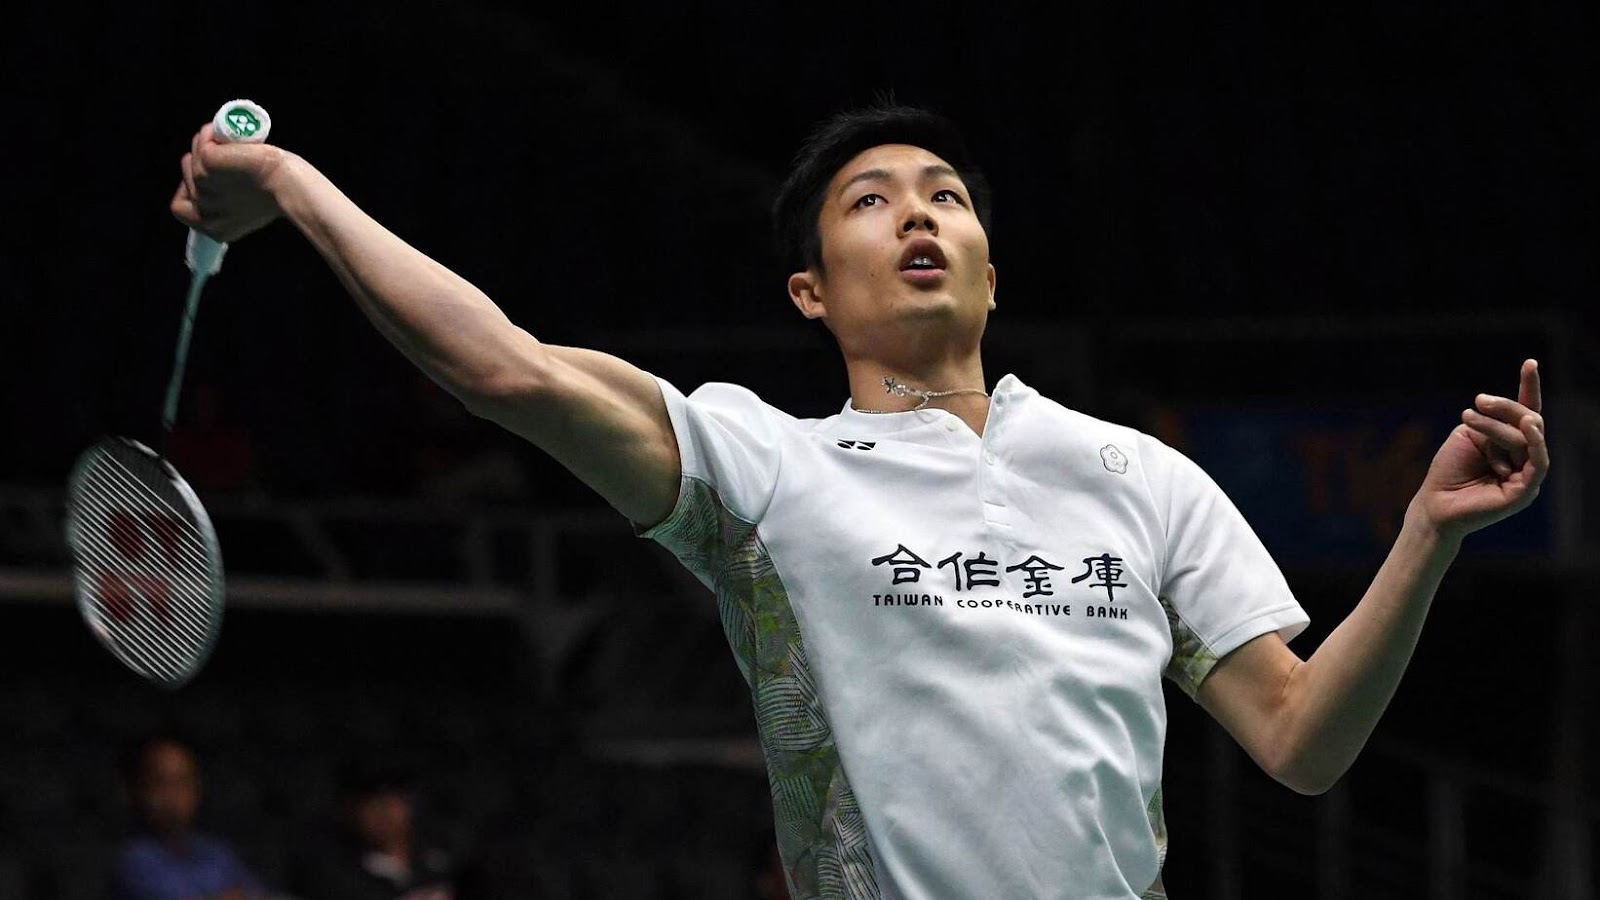 Zhou Tiancheng của Đài Loan đã gặp Chen Long ở Thế vận hội này, và đã bị đánh bại sau ba ván đấu